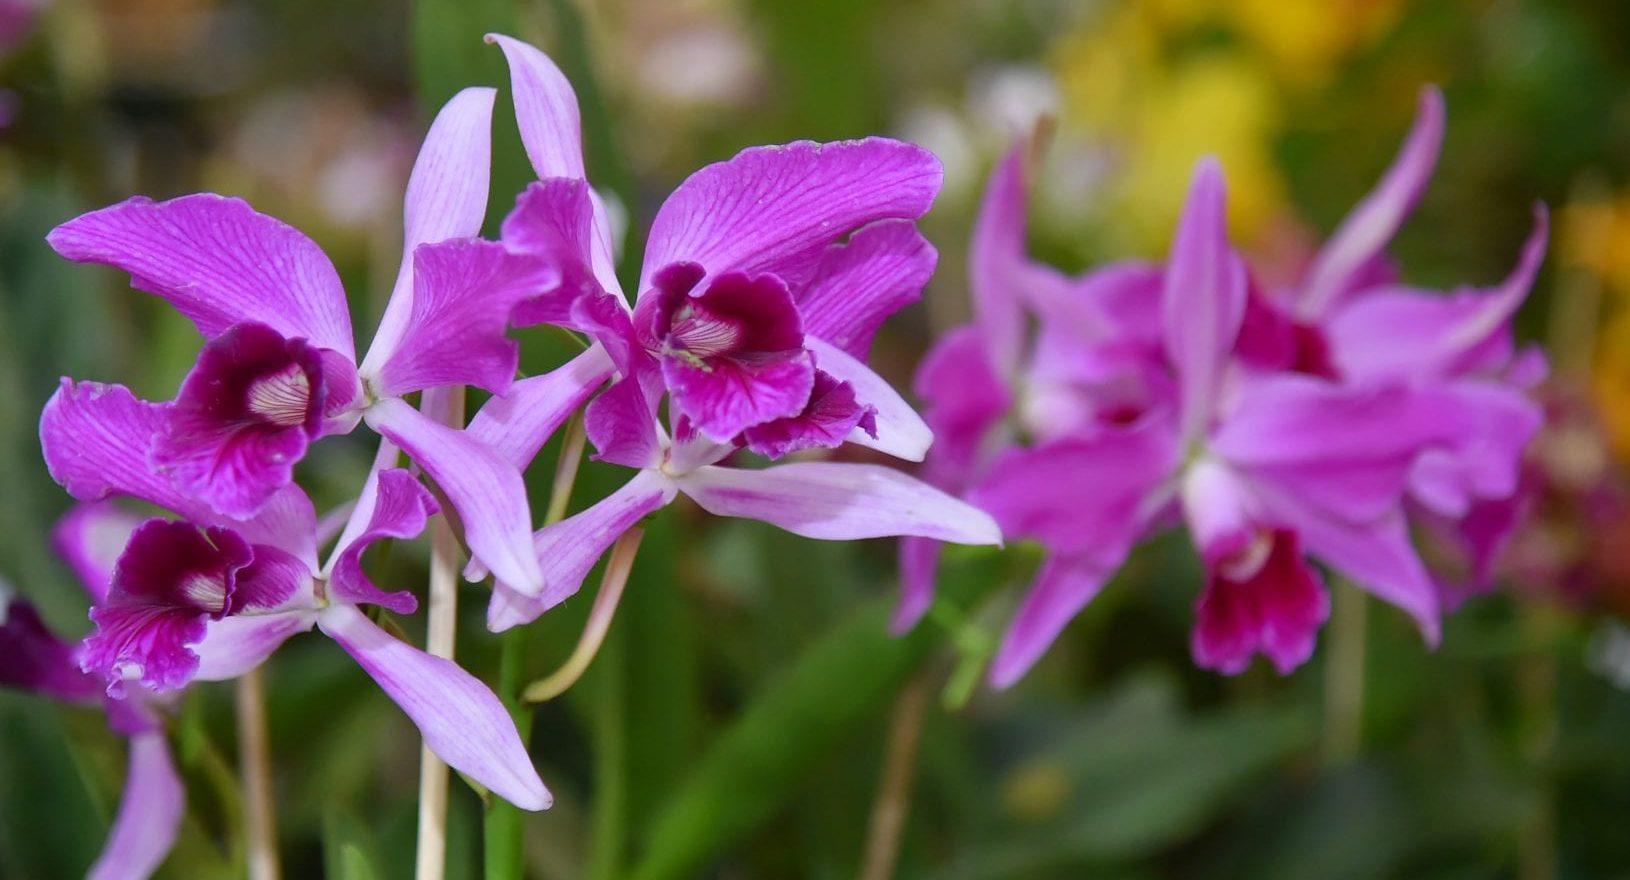 13ª Exposição de Orquídeas e Rosa do Deserto é realizada neste fim de semana